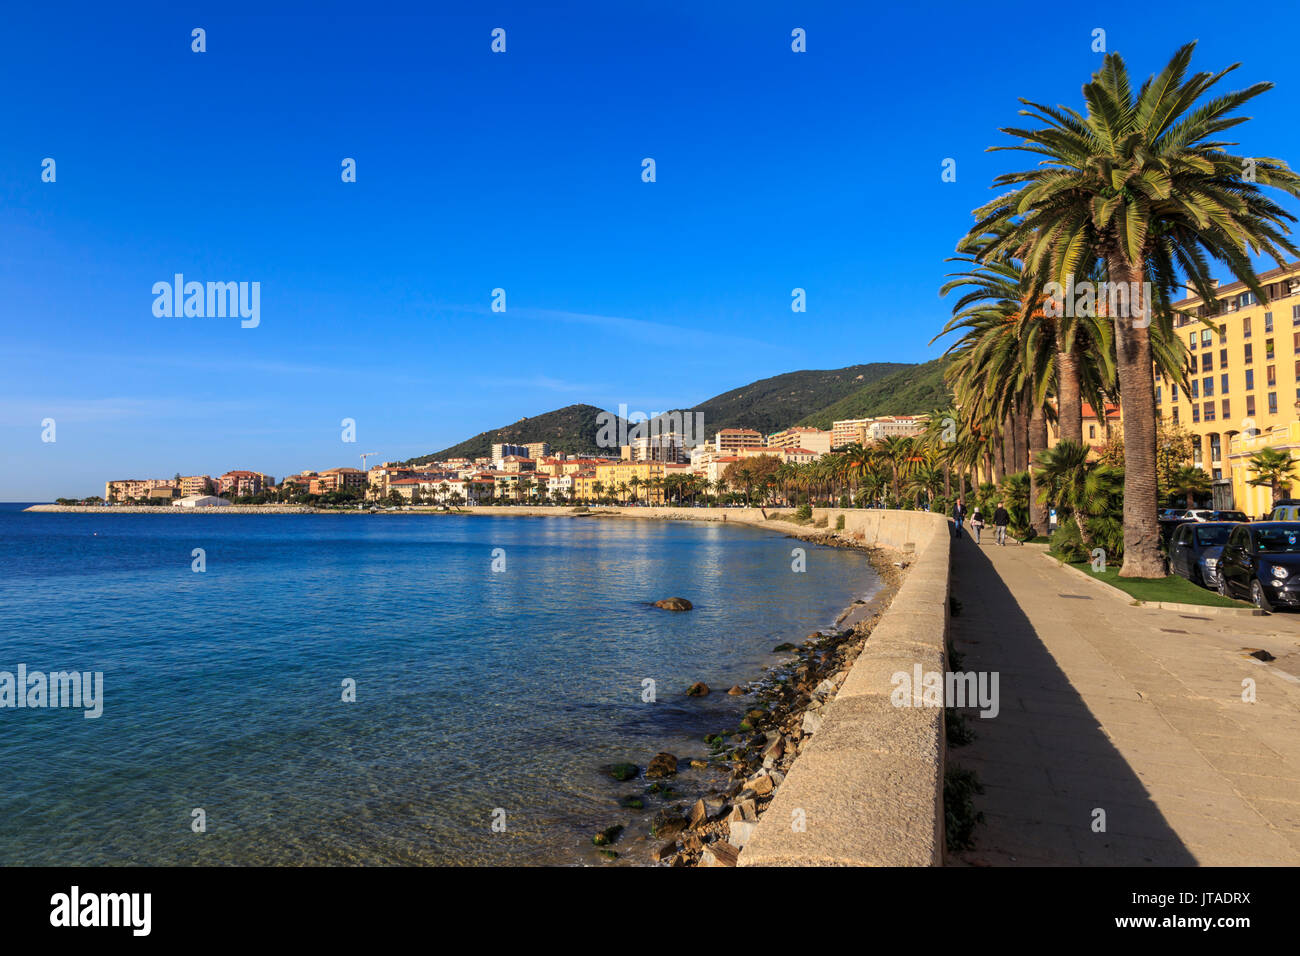 Saint Francois lungomare con palme, la luce del mattino, Ajaccio, Isola di Corsica, Mediterraneo, Francia, Mediterraneo, Europa Foto Stock